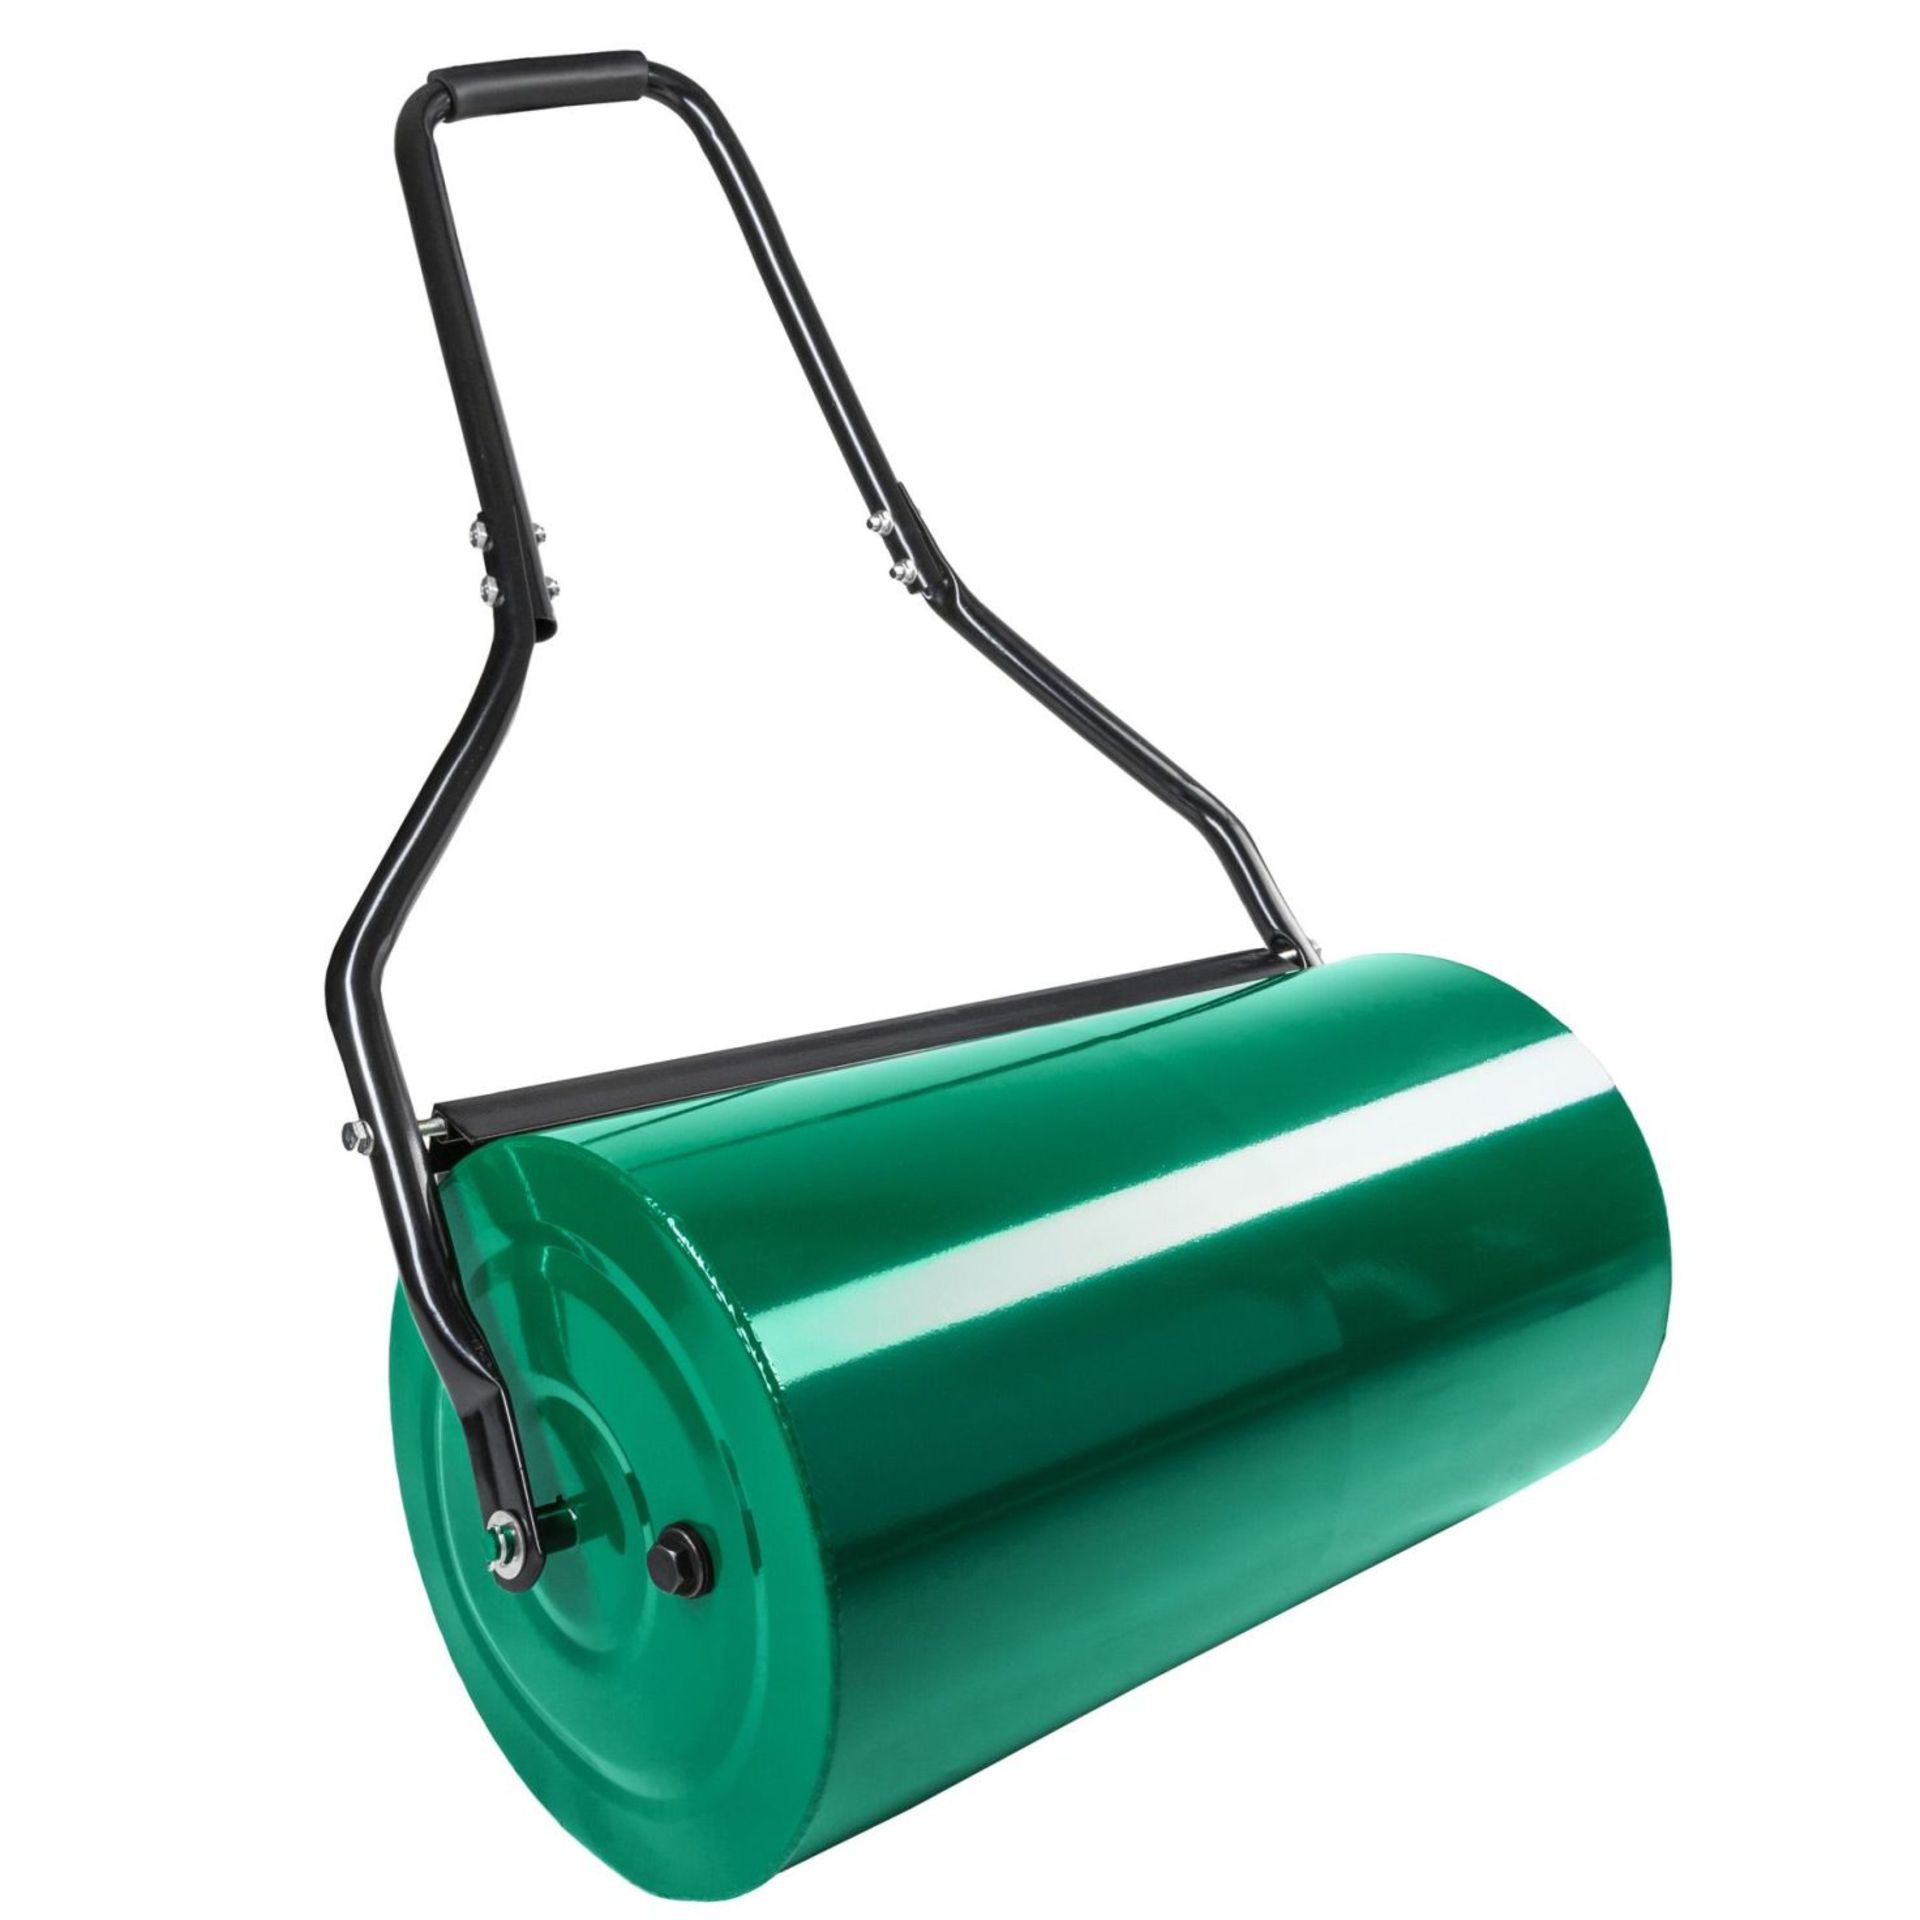 Tectake - Garden Roller Green - Boxed. RRP £59.99